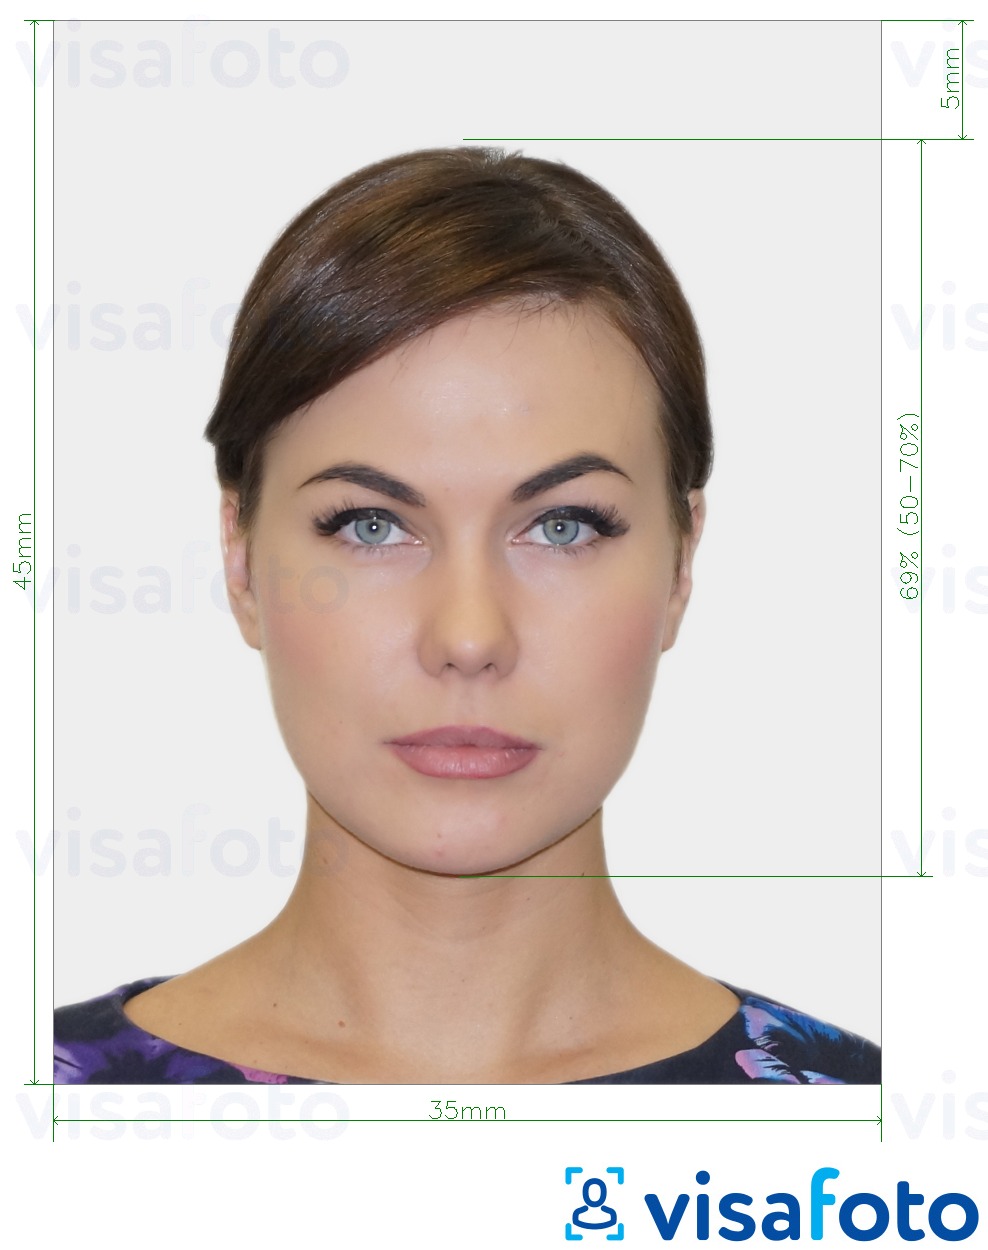 Exemple de foto per a Visa de Geòrgia 35x45 mm (3.5x4.5 cm) amb la mida exacta especificada